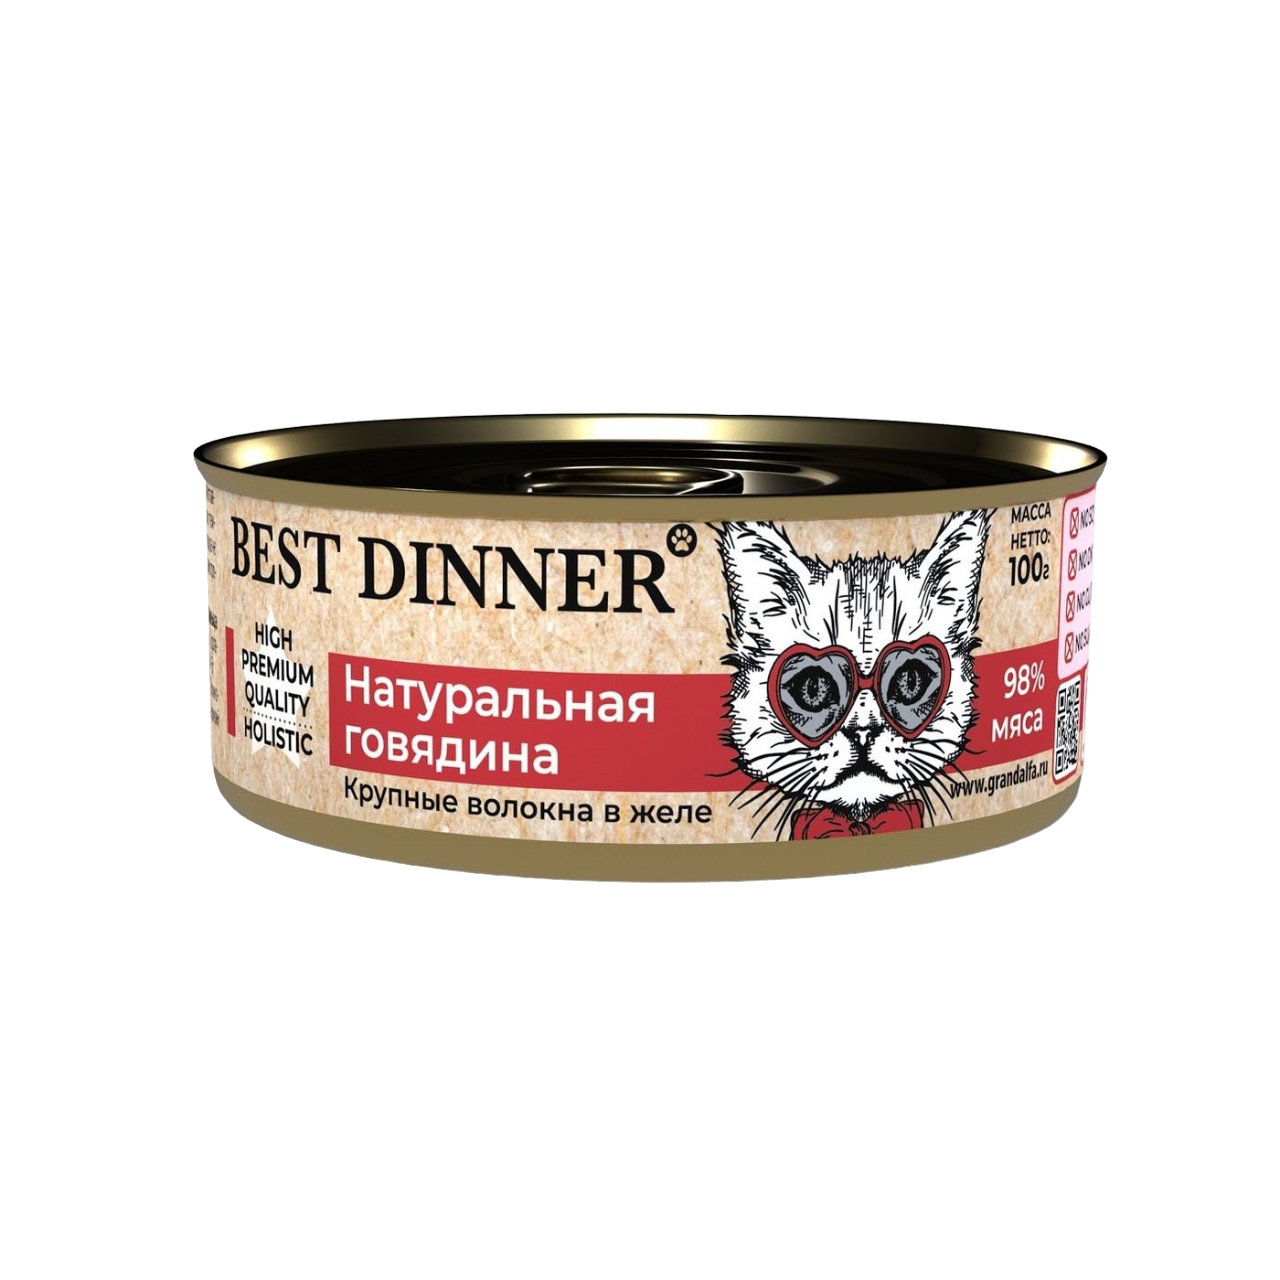 Консервы для кошек Best Dinner High Premium, натуральная говядина в желе, 100г